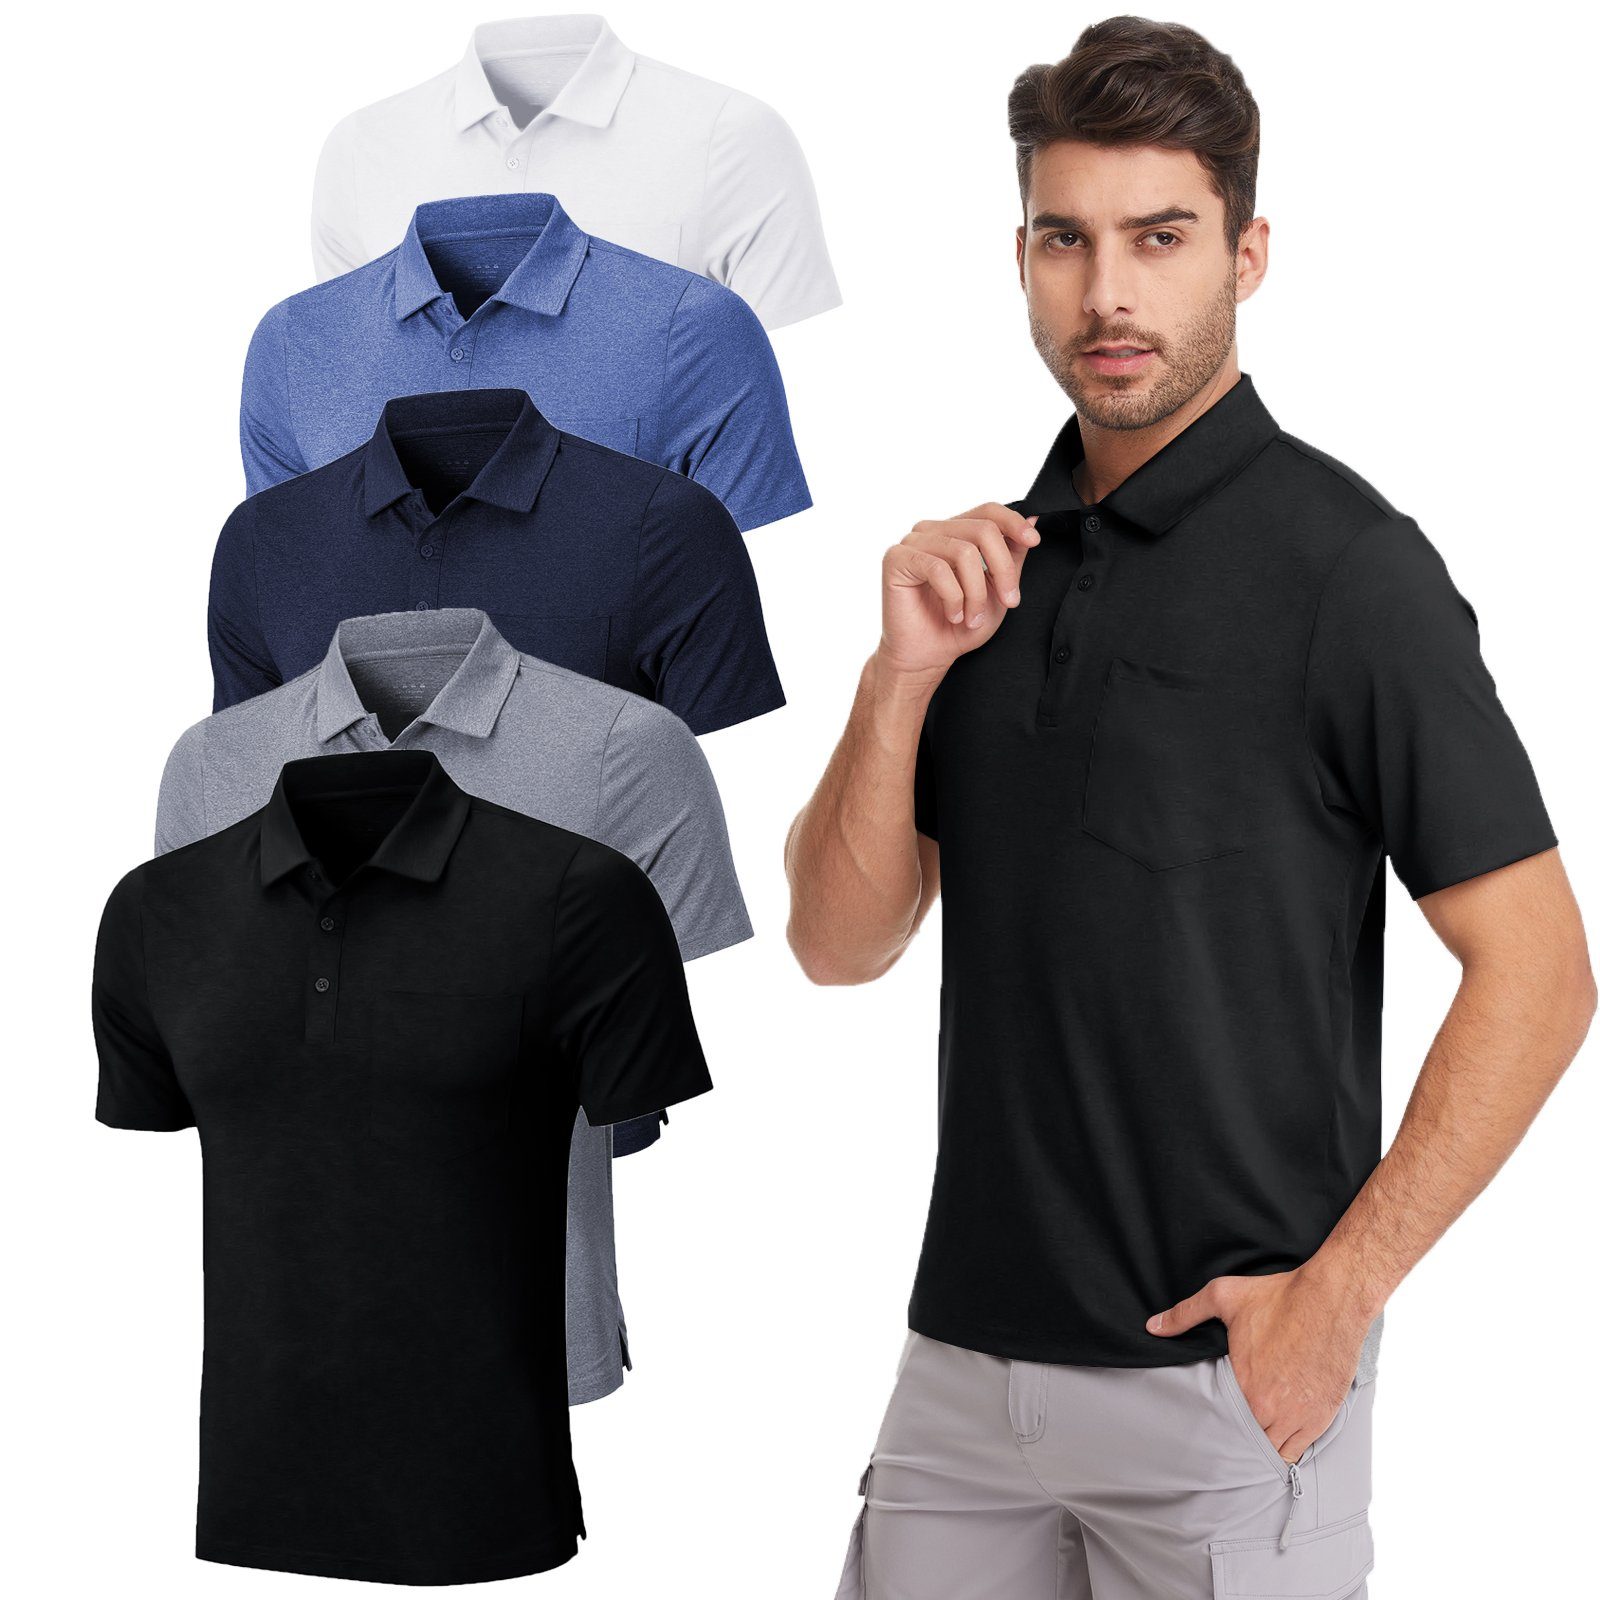 MEETYOO Poloshirt Herren Poloshirt Polohemd (Kurzarm T-Shirt, Classic Tee Hemd) Unifarben, Casual, Button-Down-Kragen, Atmungsaktiv Weiß